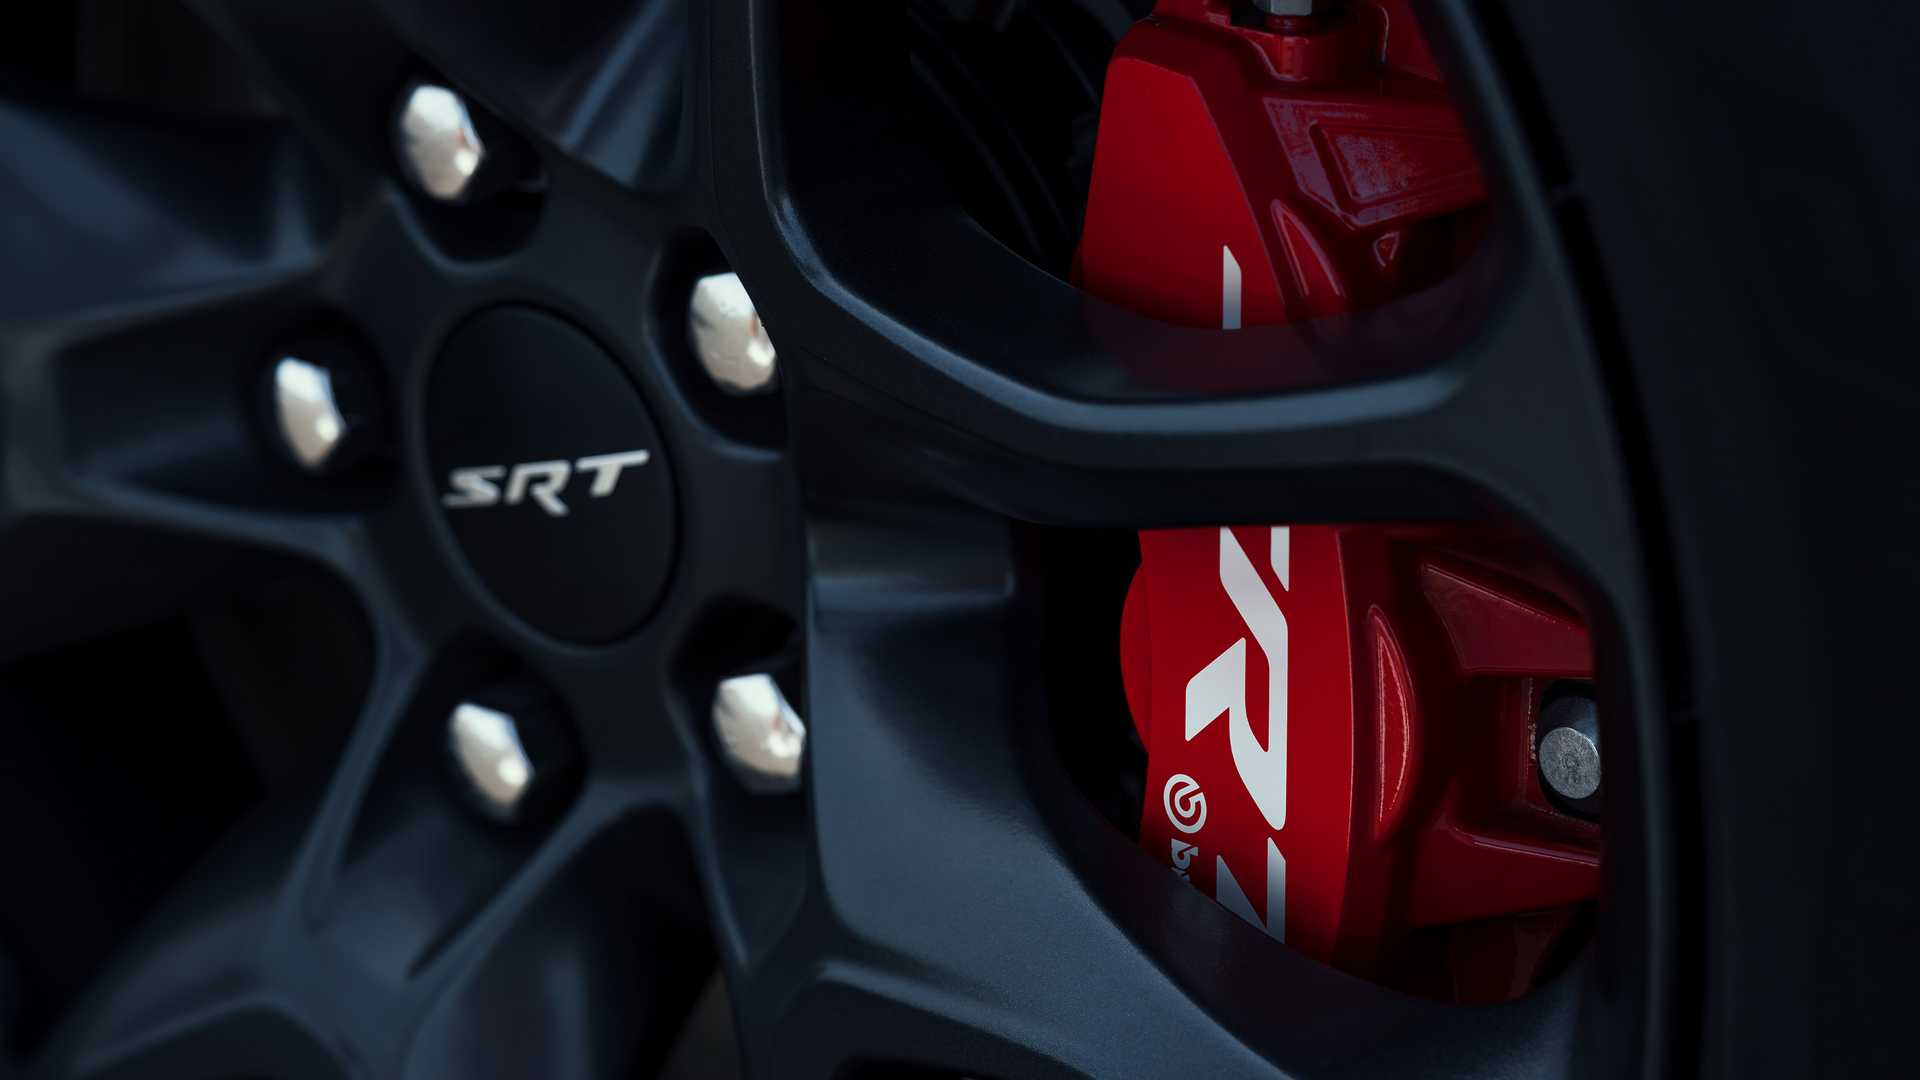 دودج تكشف عن دورانجو SRT هيلكات 2021 كأقوى SUV في العالم 64